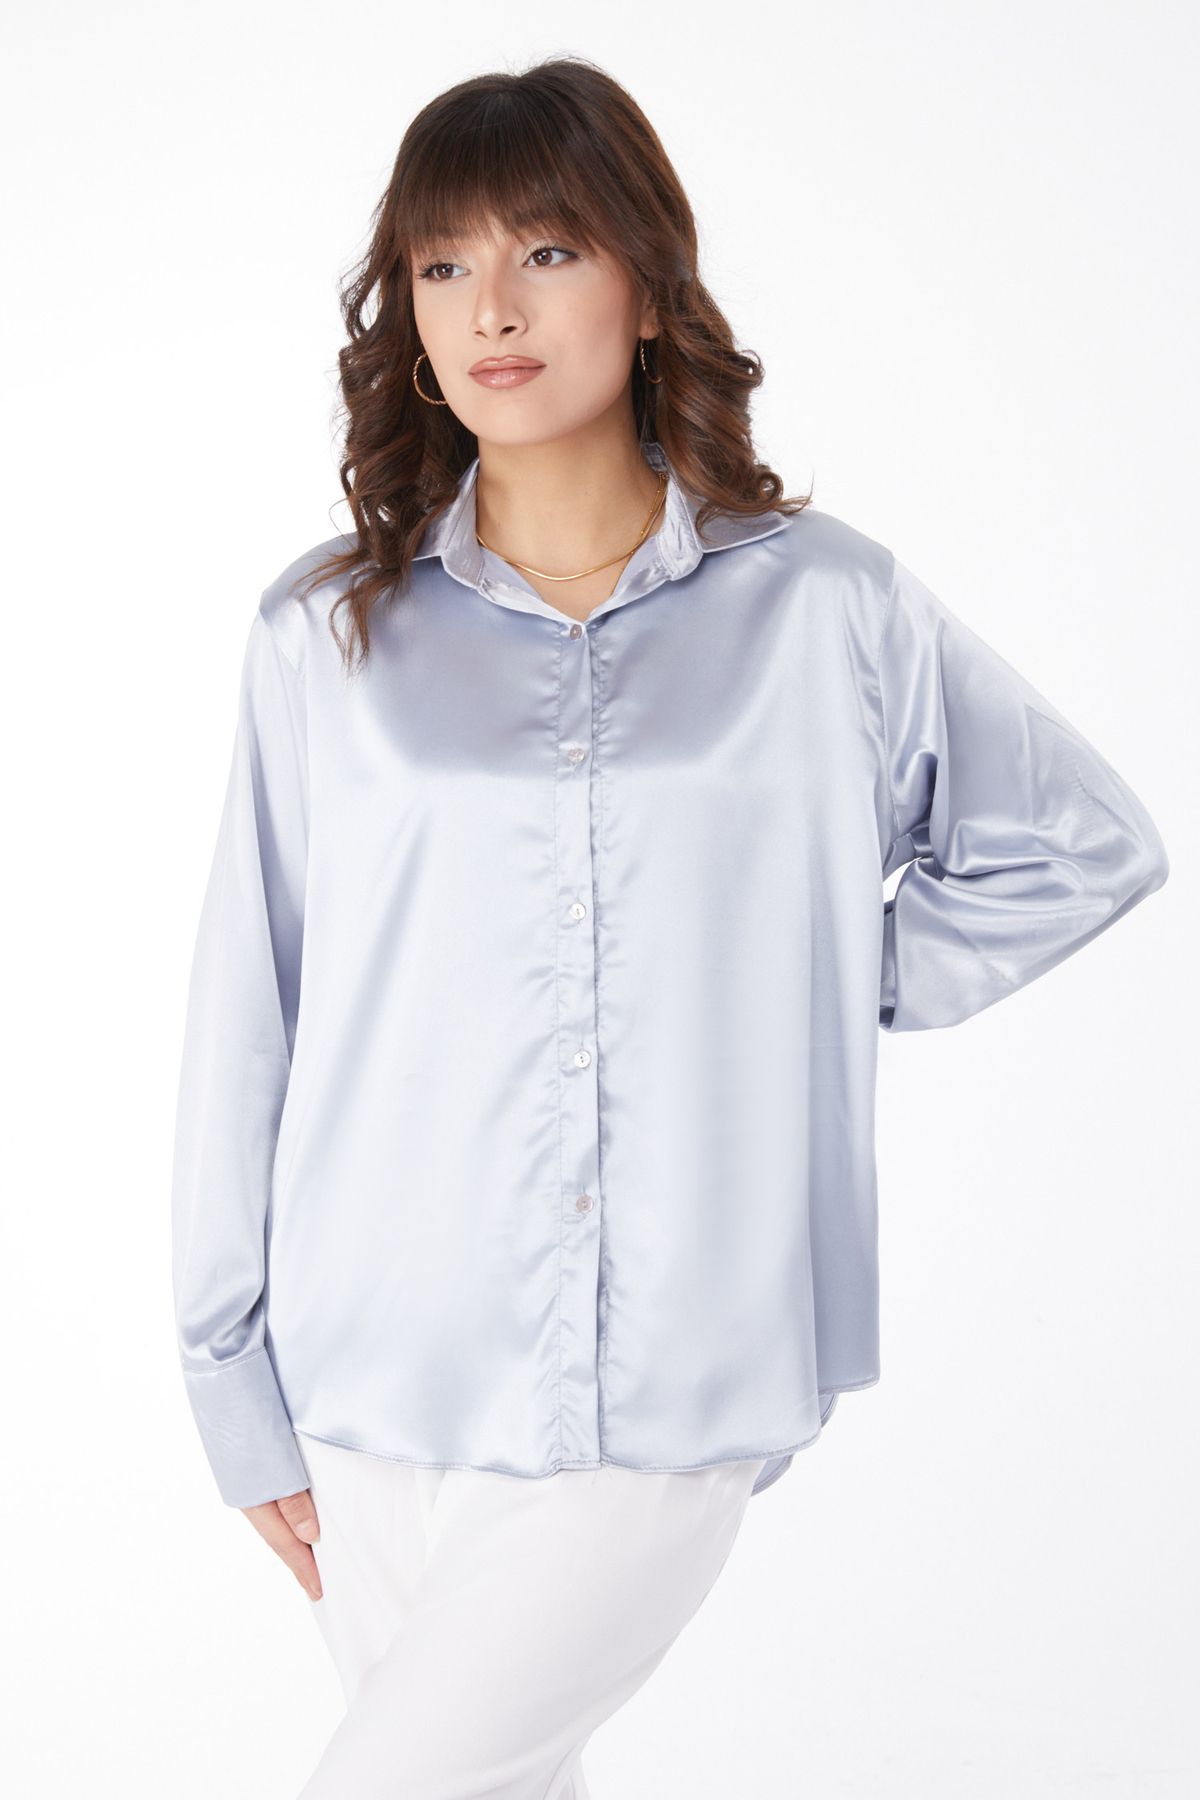 TOFİSA Düz Gömlek Yaka Kadın Gri Saten Gömlek - 25038